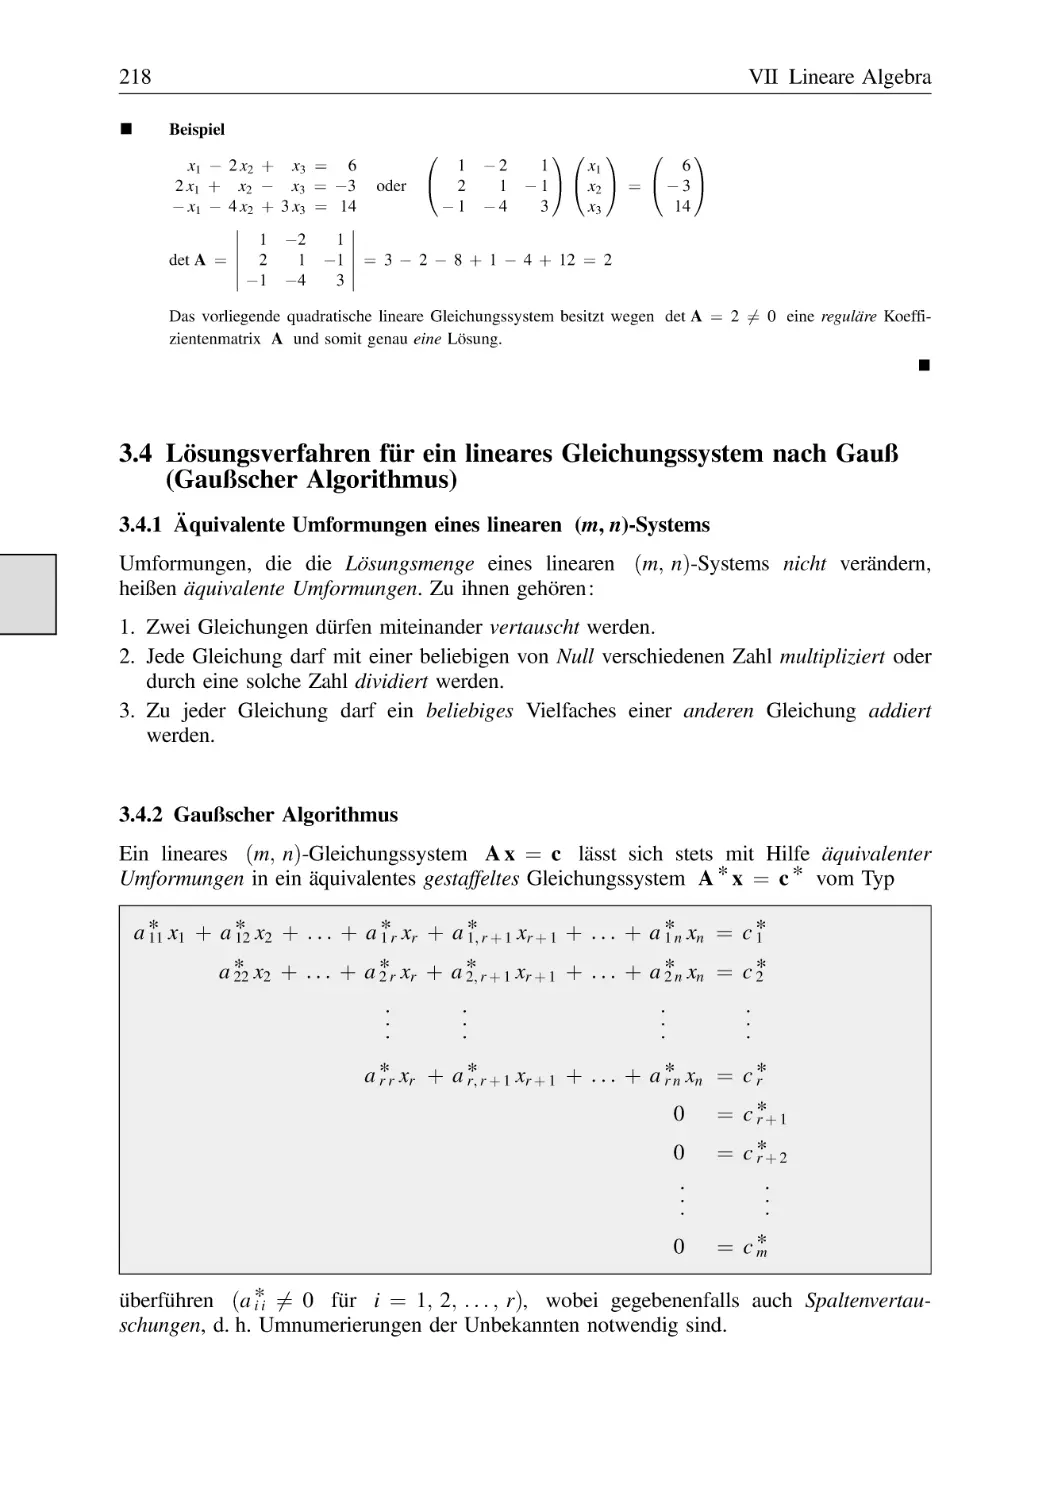 3.4 Lösungsverfahren für ein lineares Gleichungssystem nach Gauß (Gaußscher Algorithmus)
3.4.1 Äquivalente Umformungen eines linearen (m, n)-Systems
3.4.2 Gaußscher Algorithmus